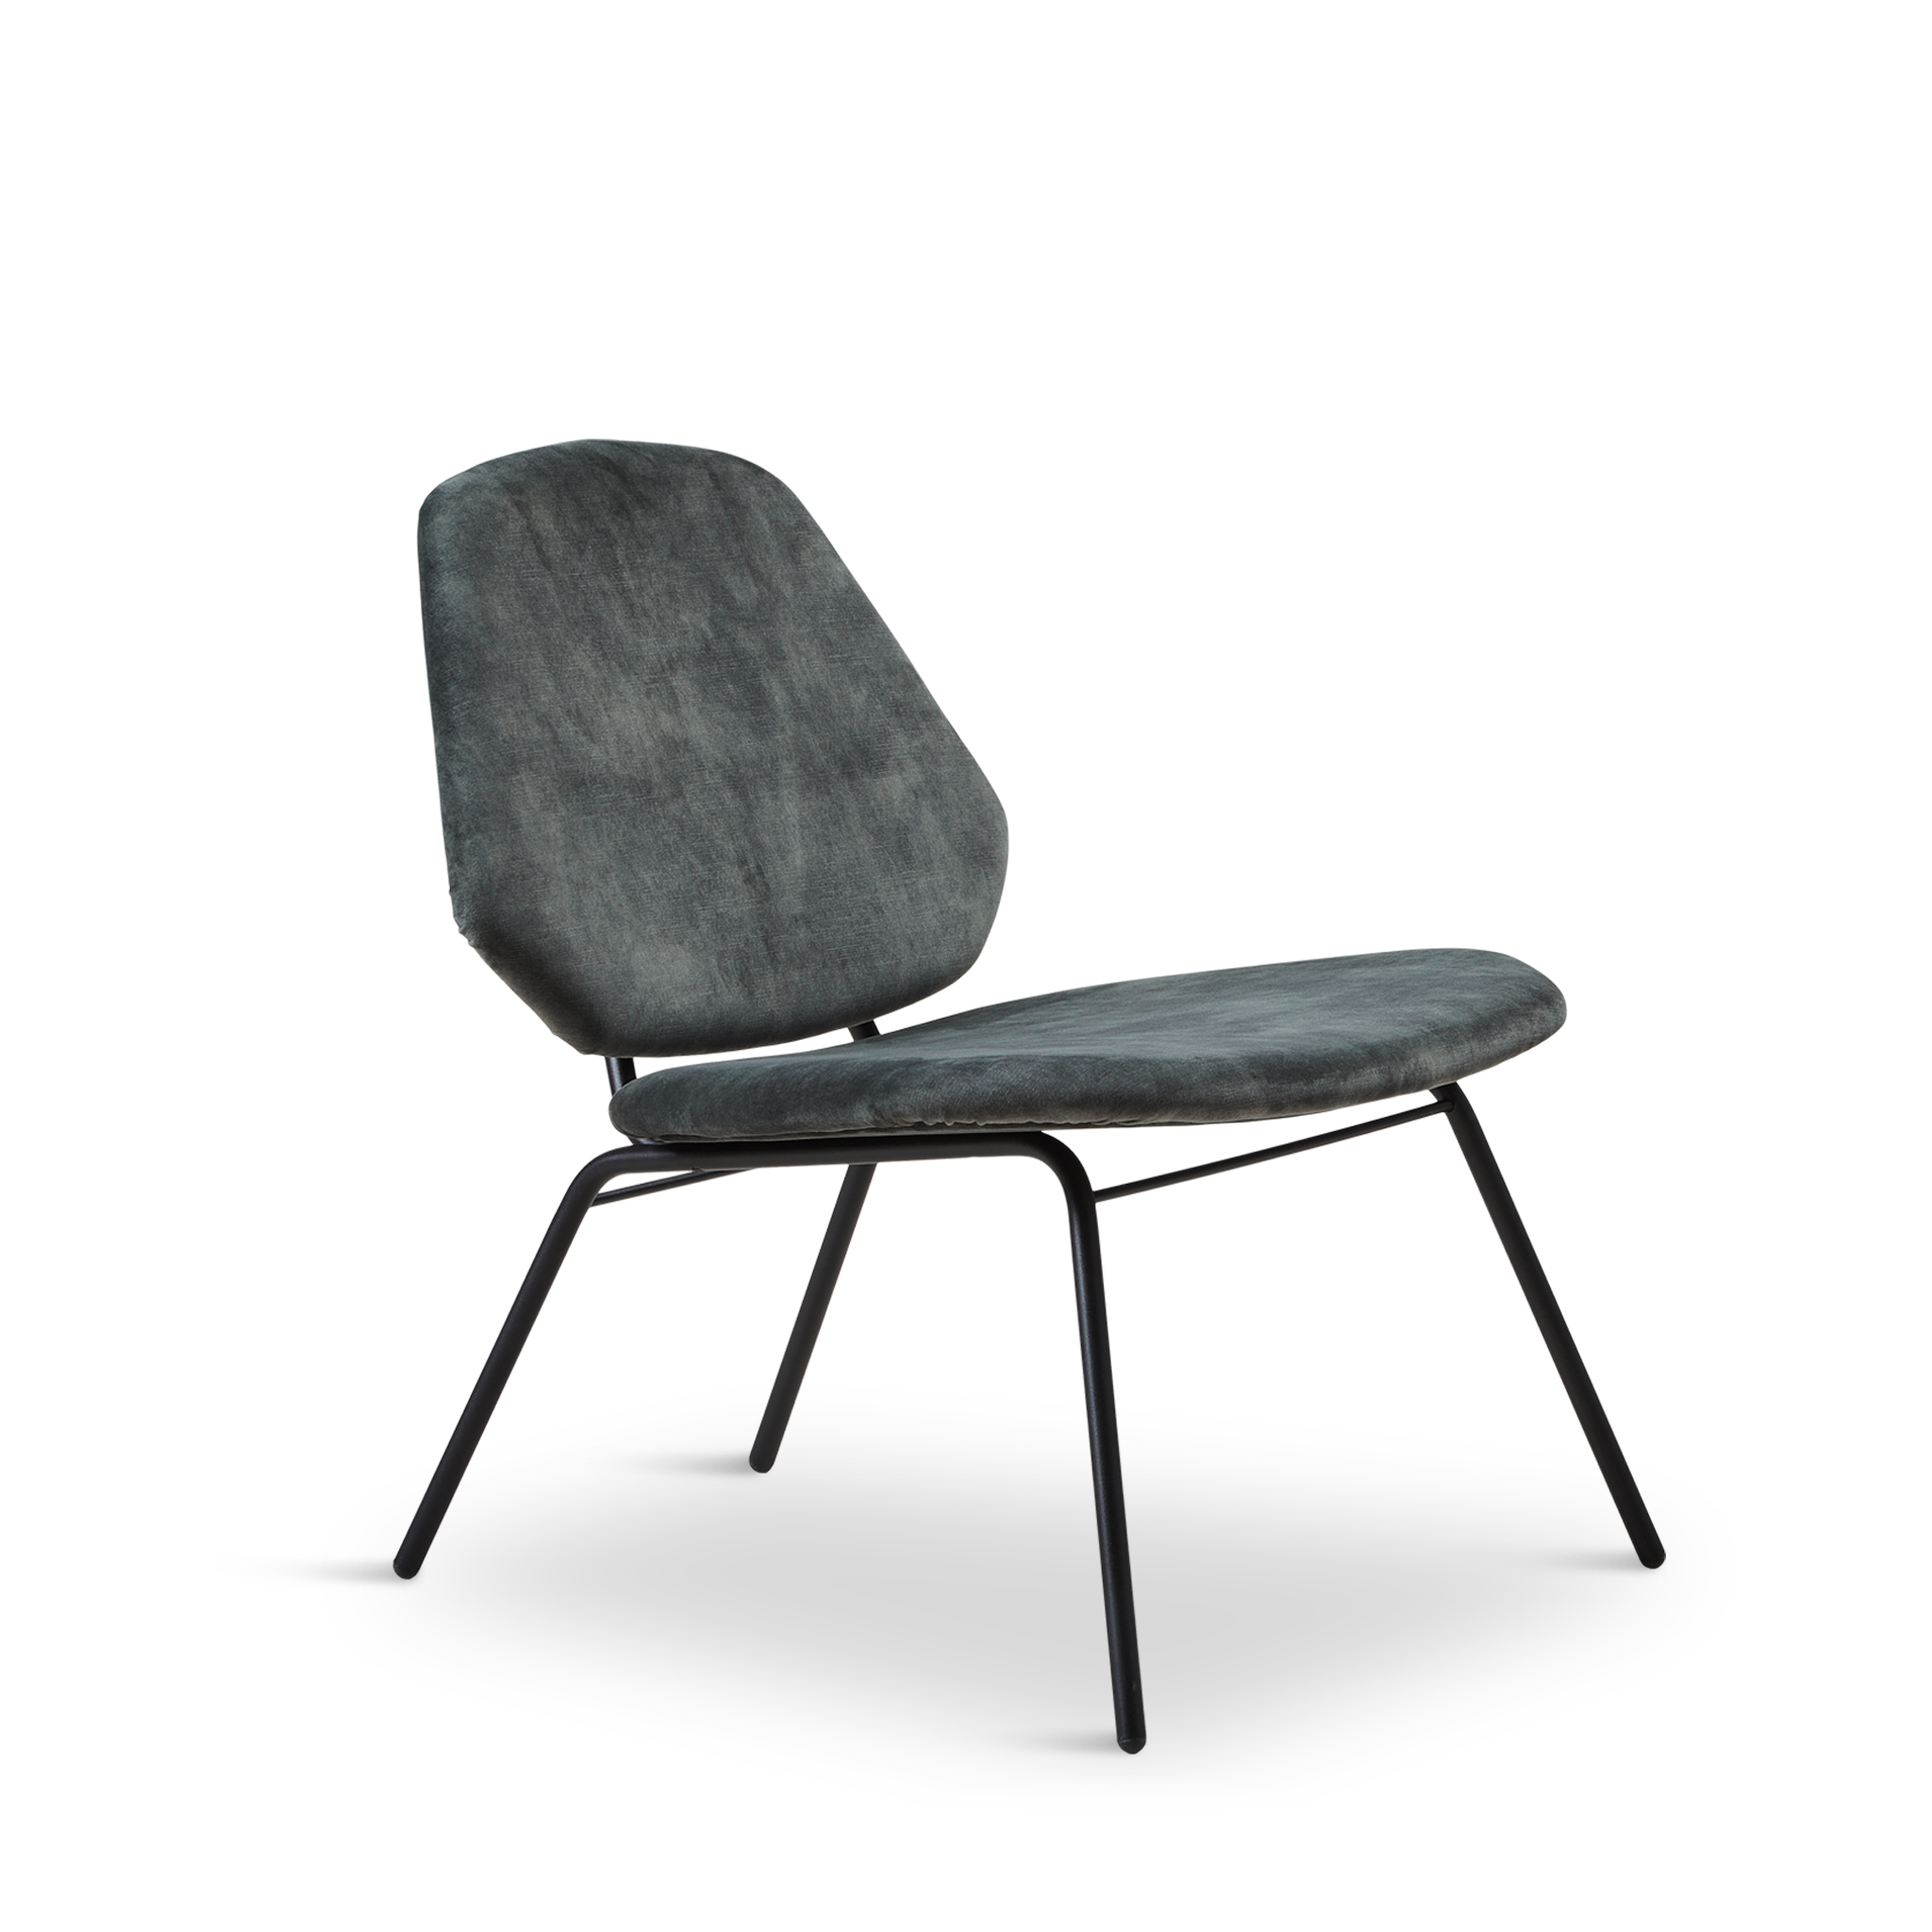 Woud - Lean Lounge Chair - Dusty Green